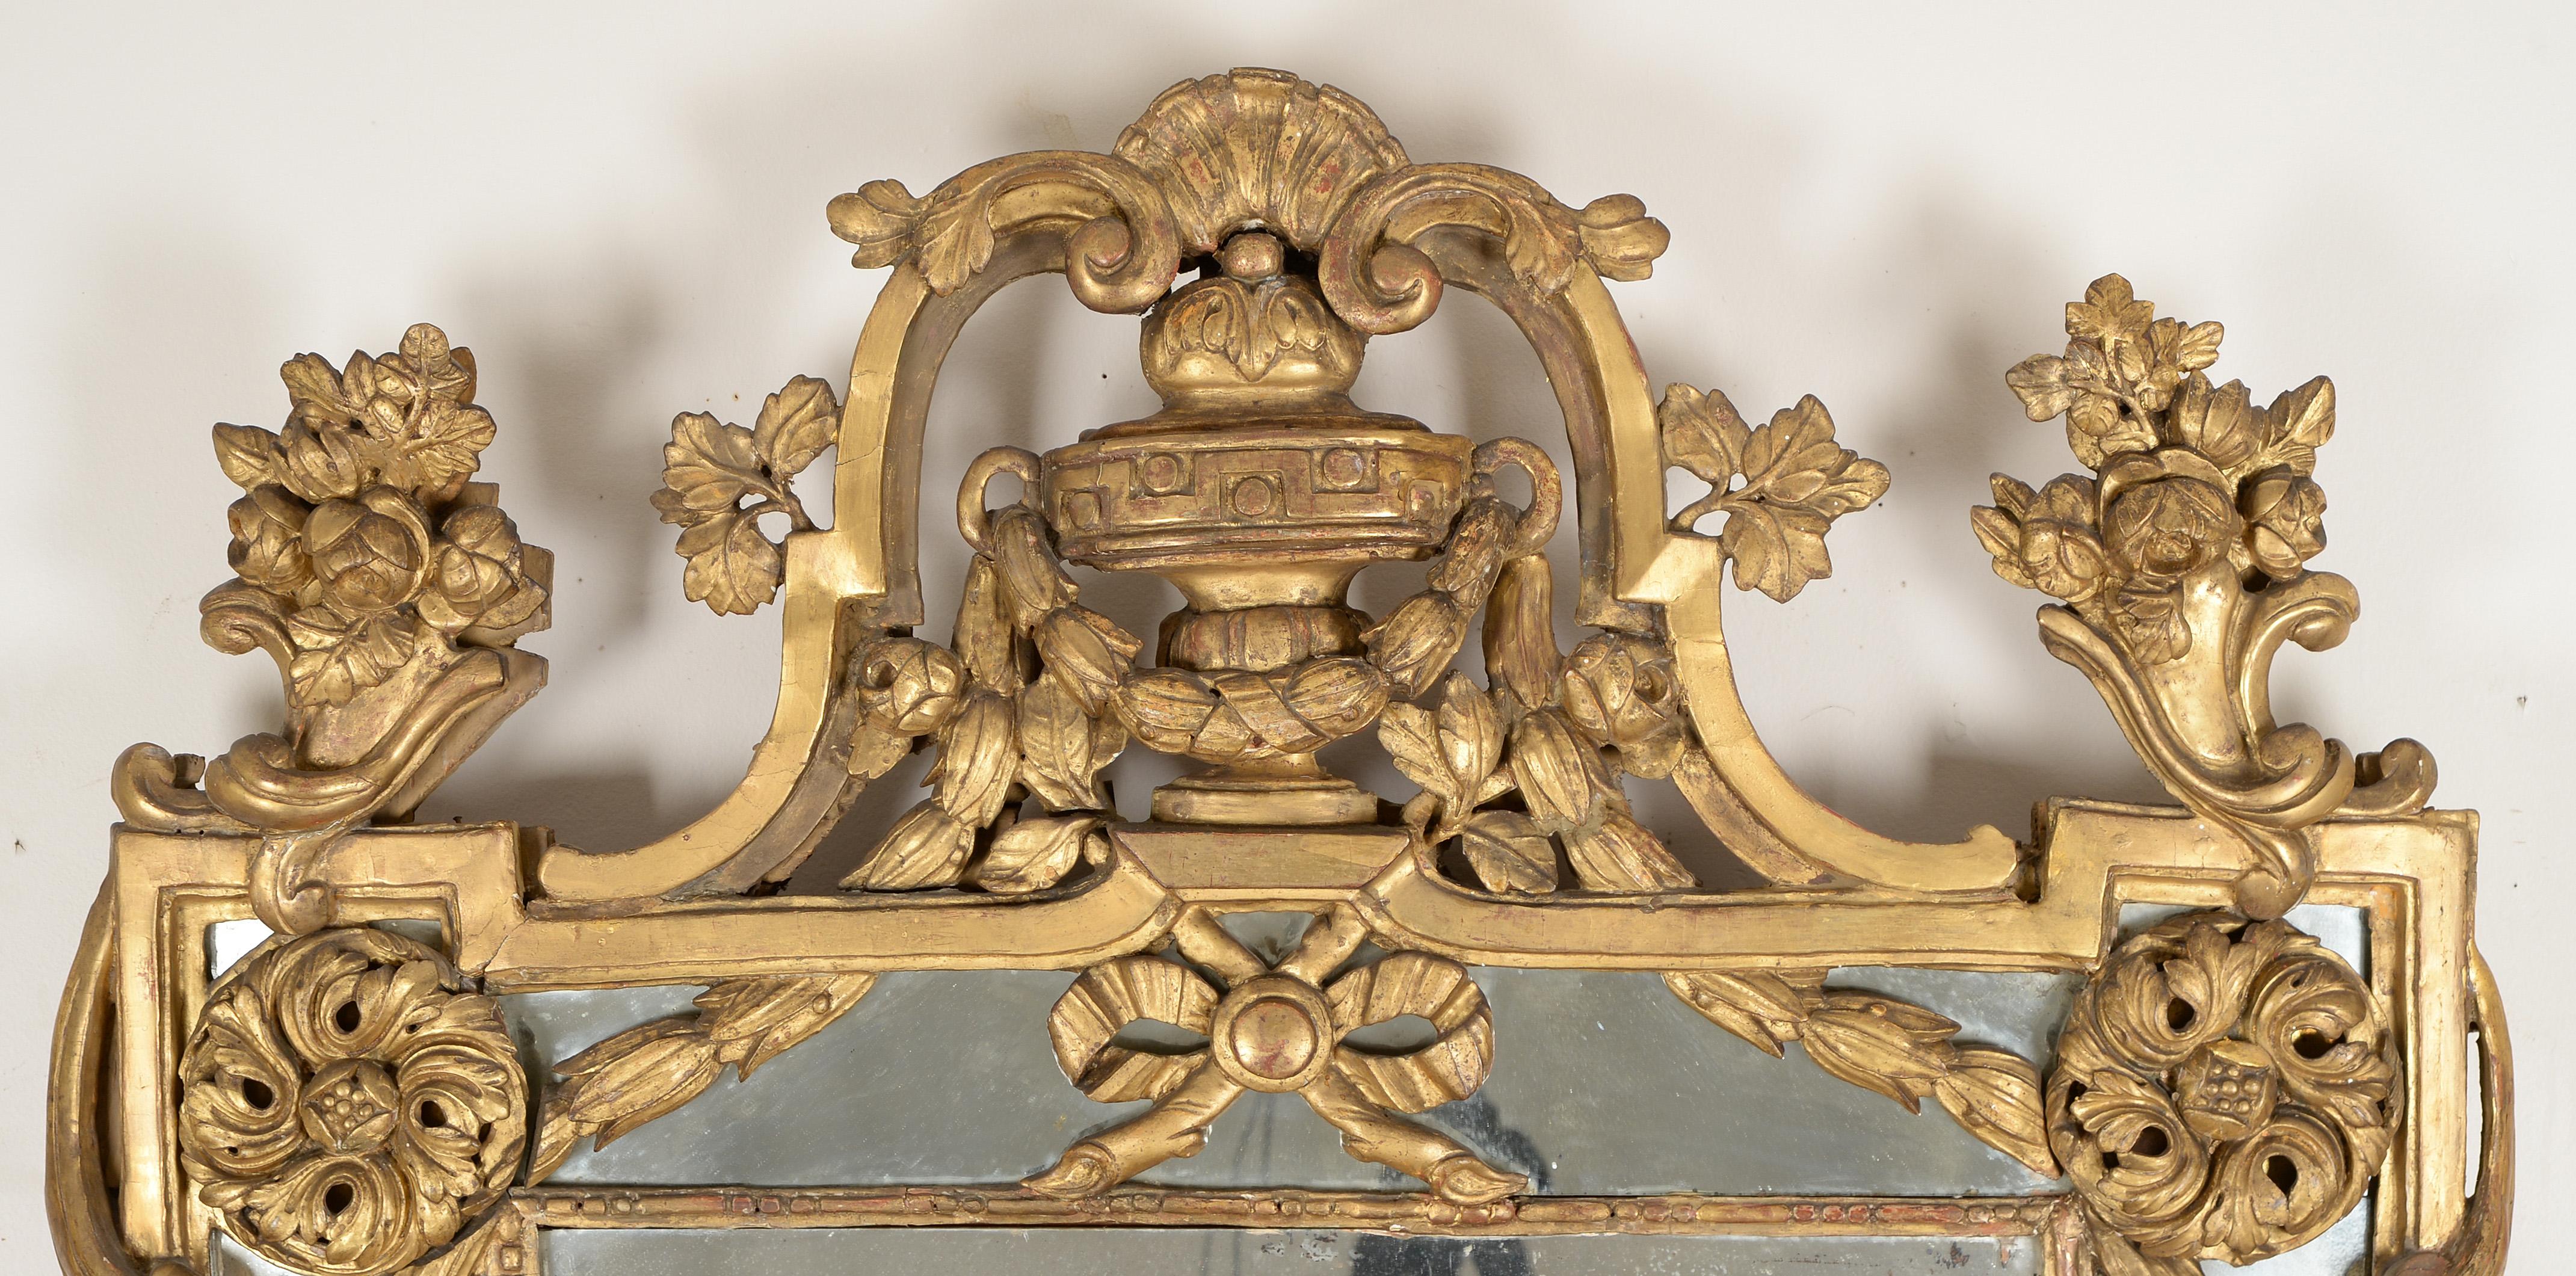 Rare miroir en bois doré 'A La Grecque' de la fin de Louis XV
La plaque rectangulaire divisée est surmontée d'un trophée en forme d'urne flanqué de vases fleuris de chaque côté et suspendu à des guirlandes de campanules. 

Par sa décoration et sa